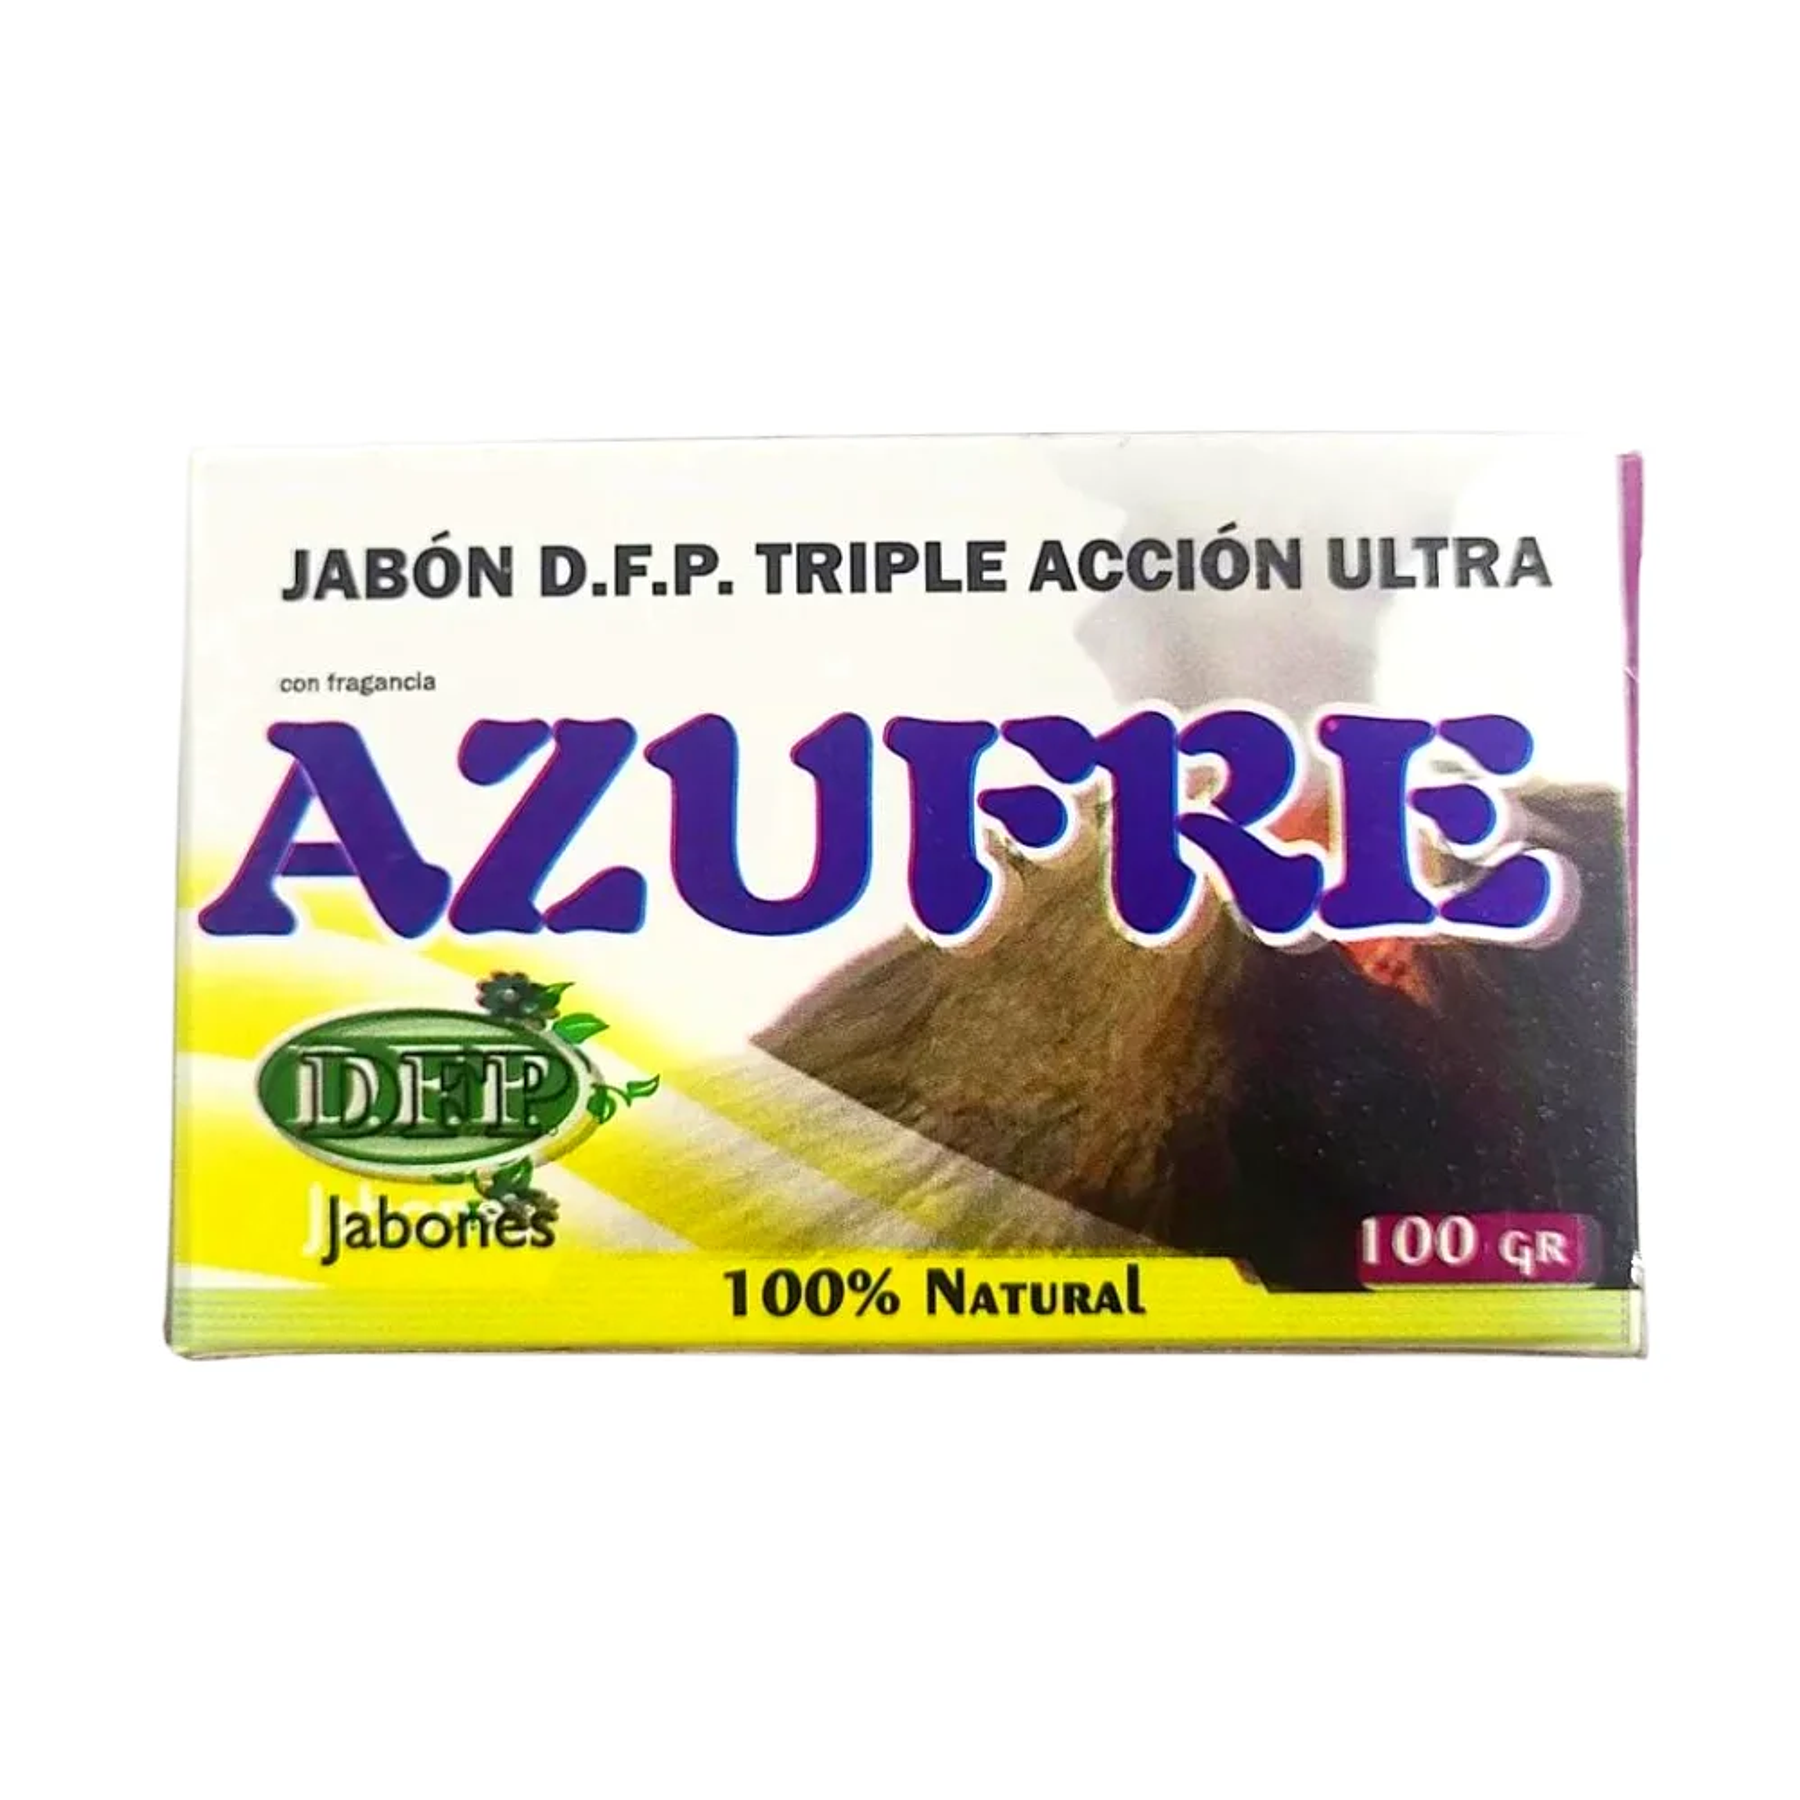 Jabón de Azufre 100 gr DFP